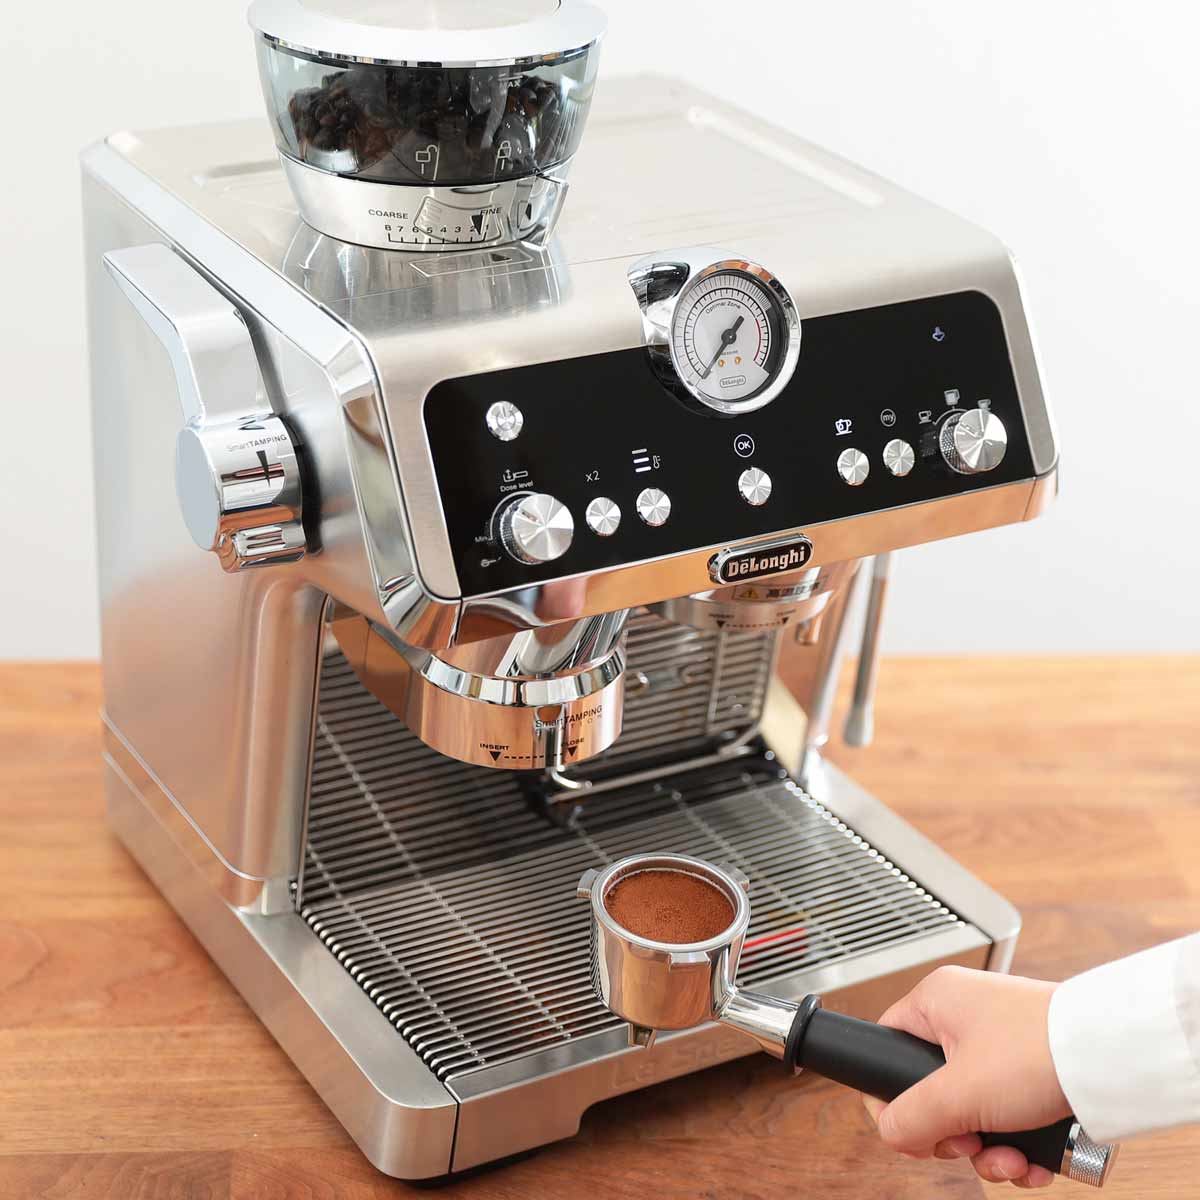 Delonghiエスプレッソメーカー、コーヒーグラインダー コーヒー豆120g